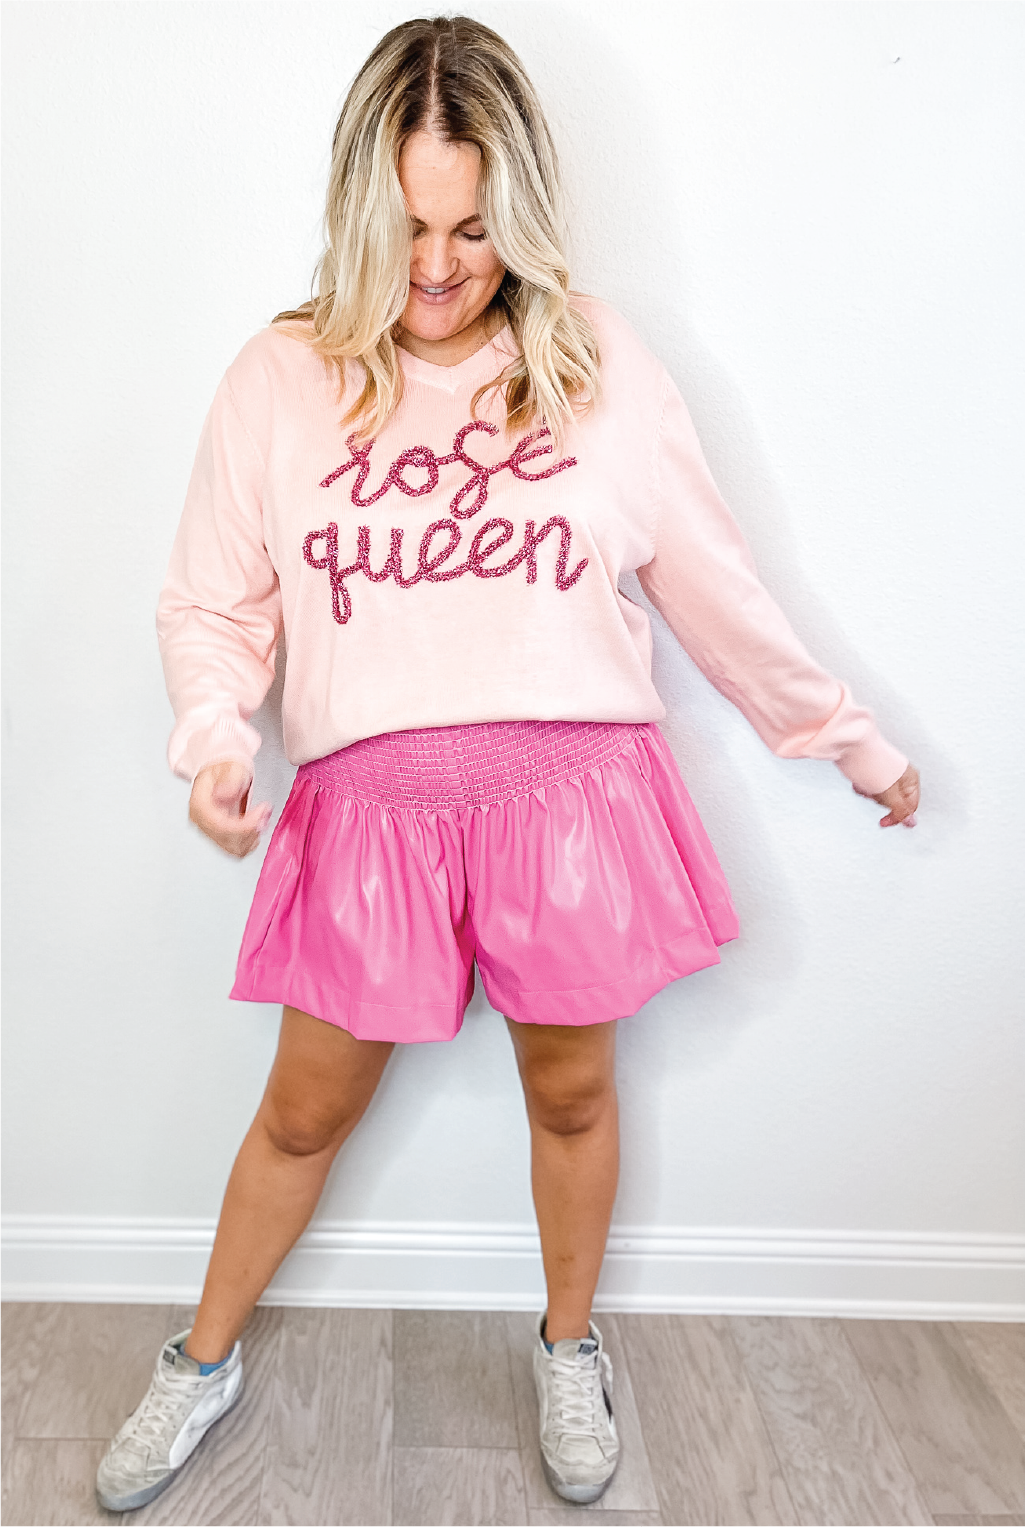 Queen Of Sparkles - Rose Queen Sweater